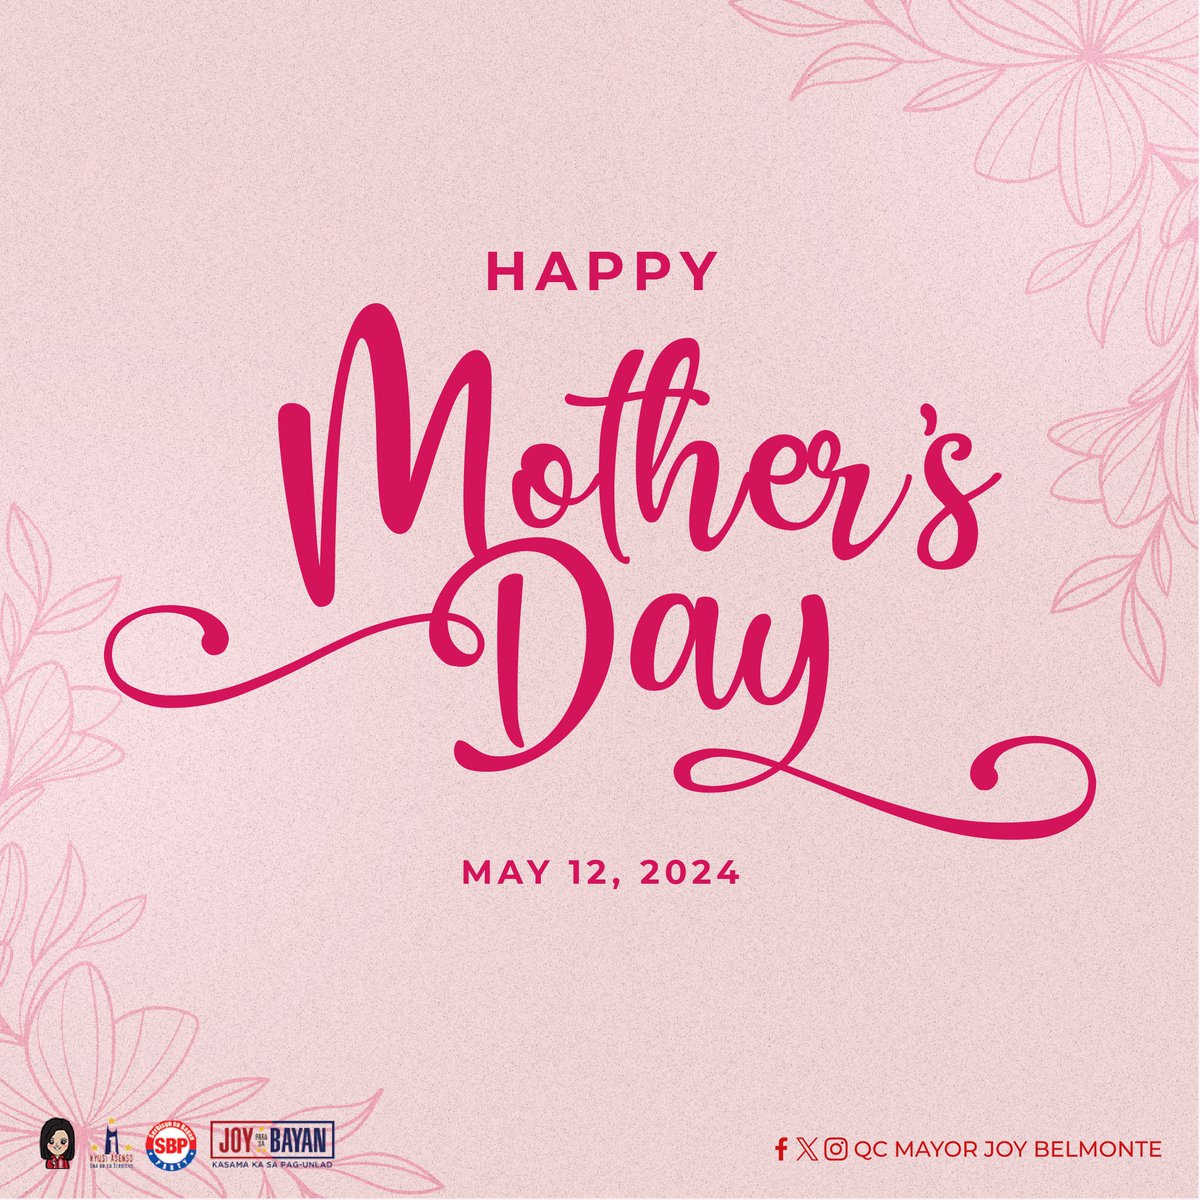 Happy mother's day sa lahat ng mga mommy, nanay, tita, ninang, lola, single mom, single dad, ate, at sa lahat ng mga tumatayong nanay sa ating lahat! ❤️